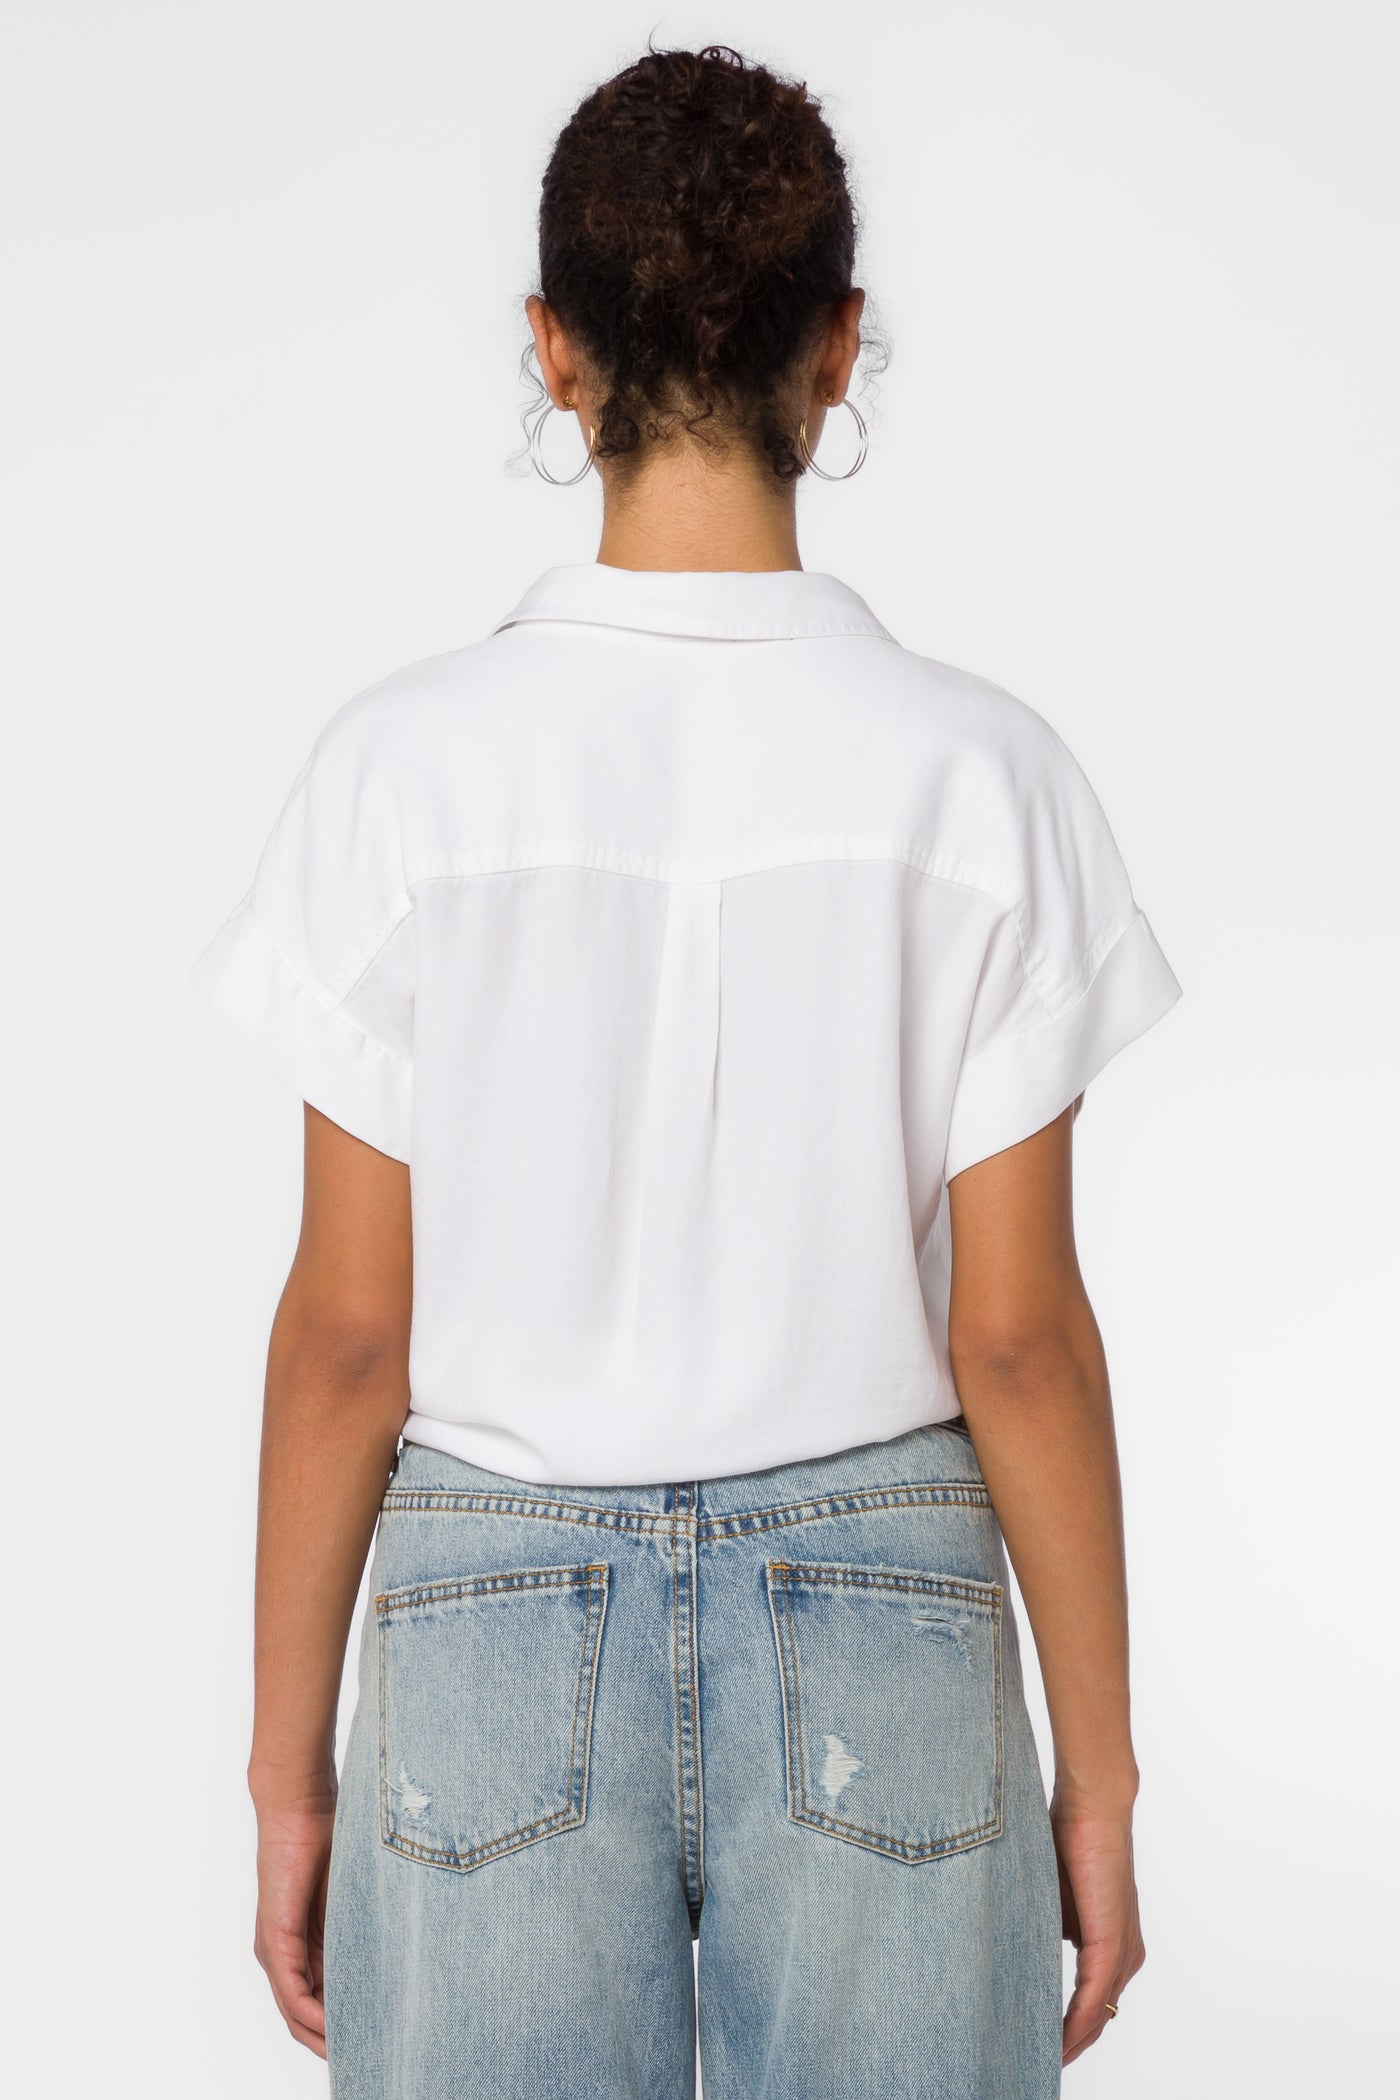 Zuria Optic White Shirt - Tops - Velvet Heart Clothing